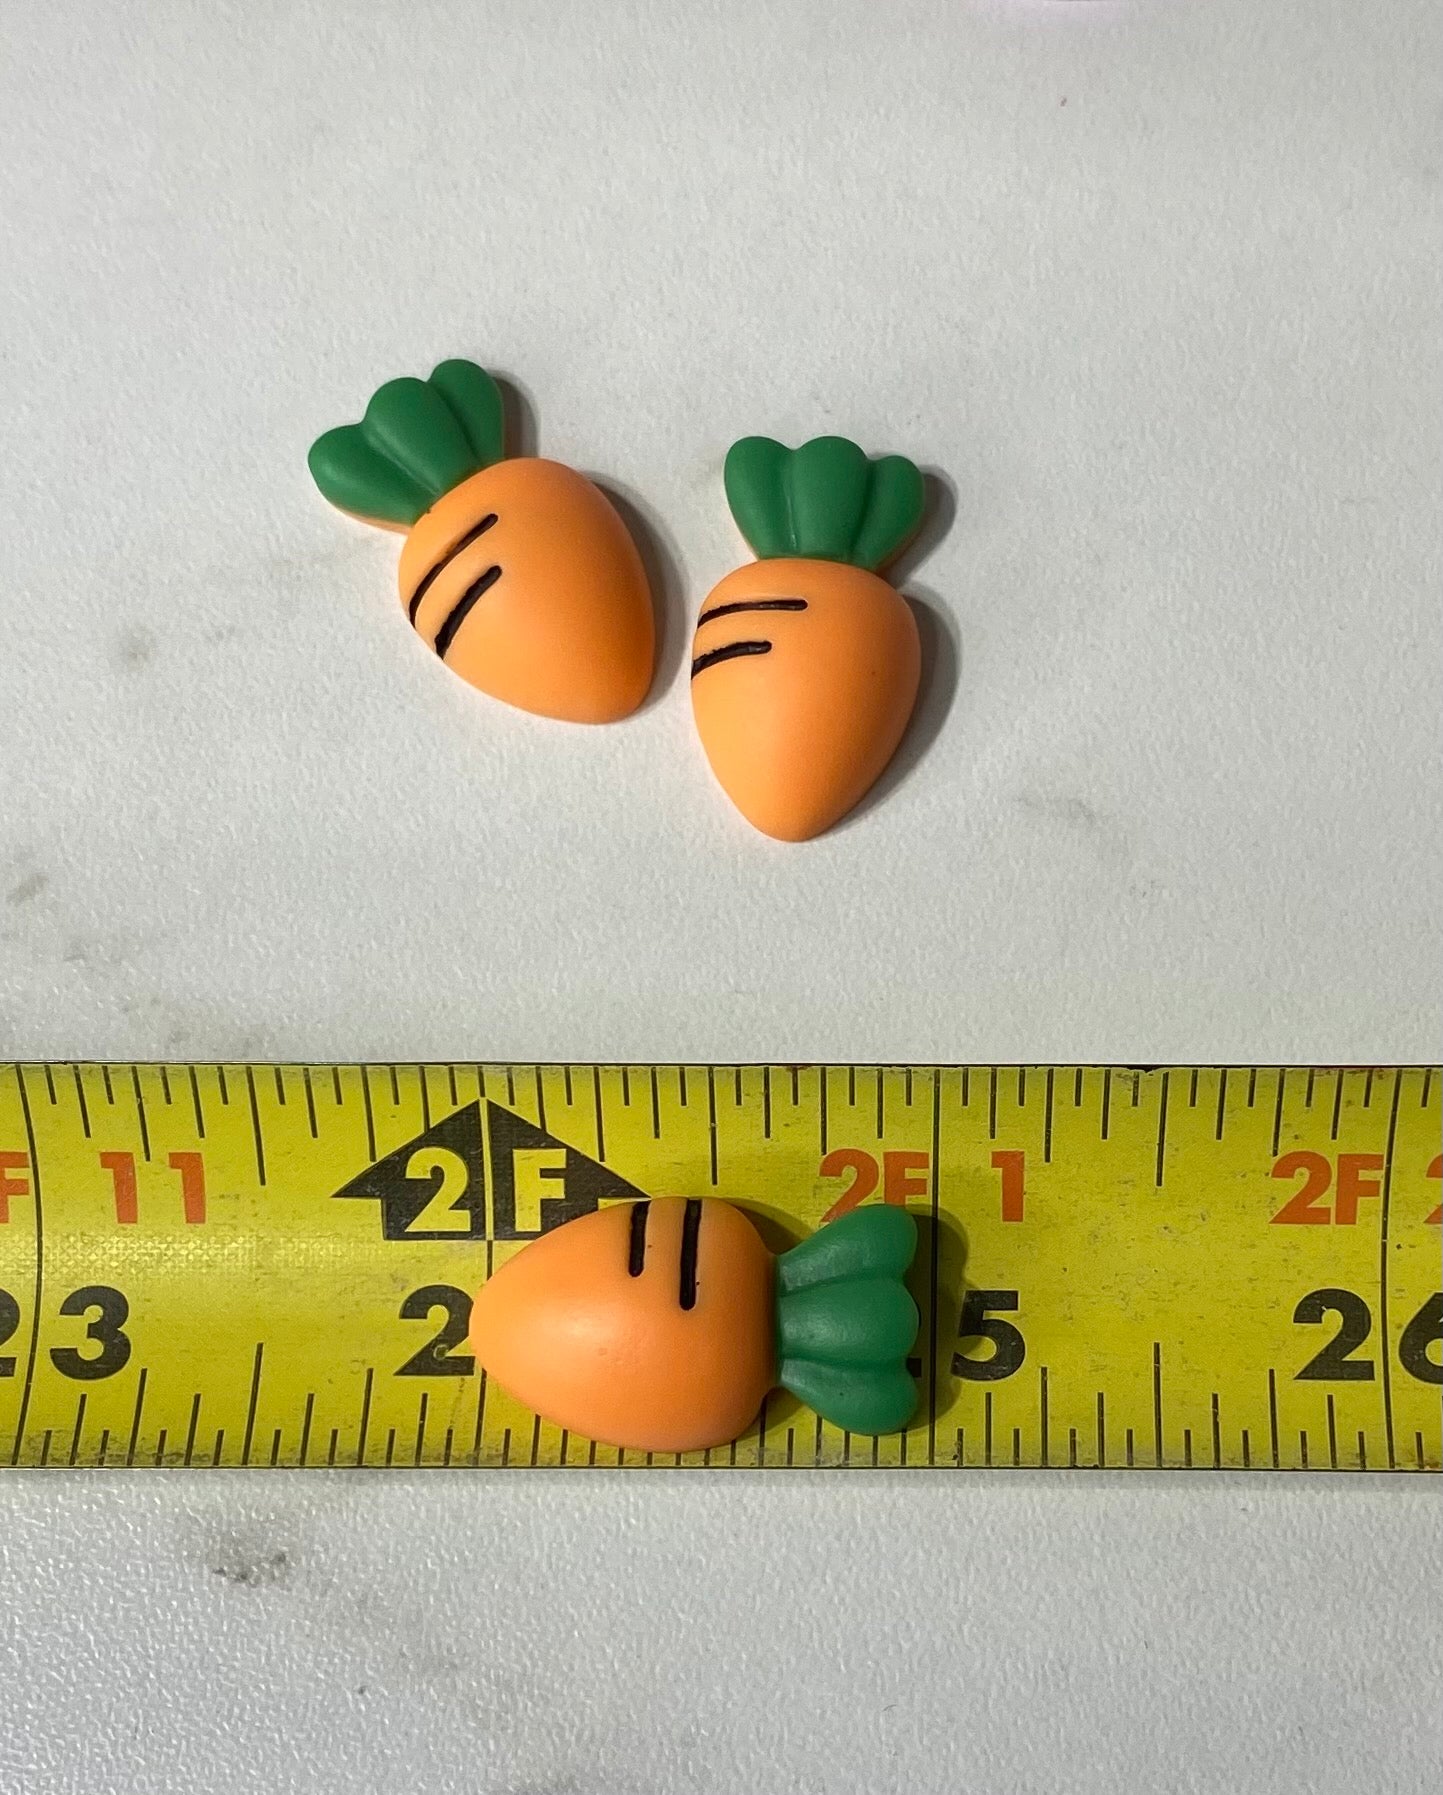 (3) carrots